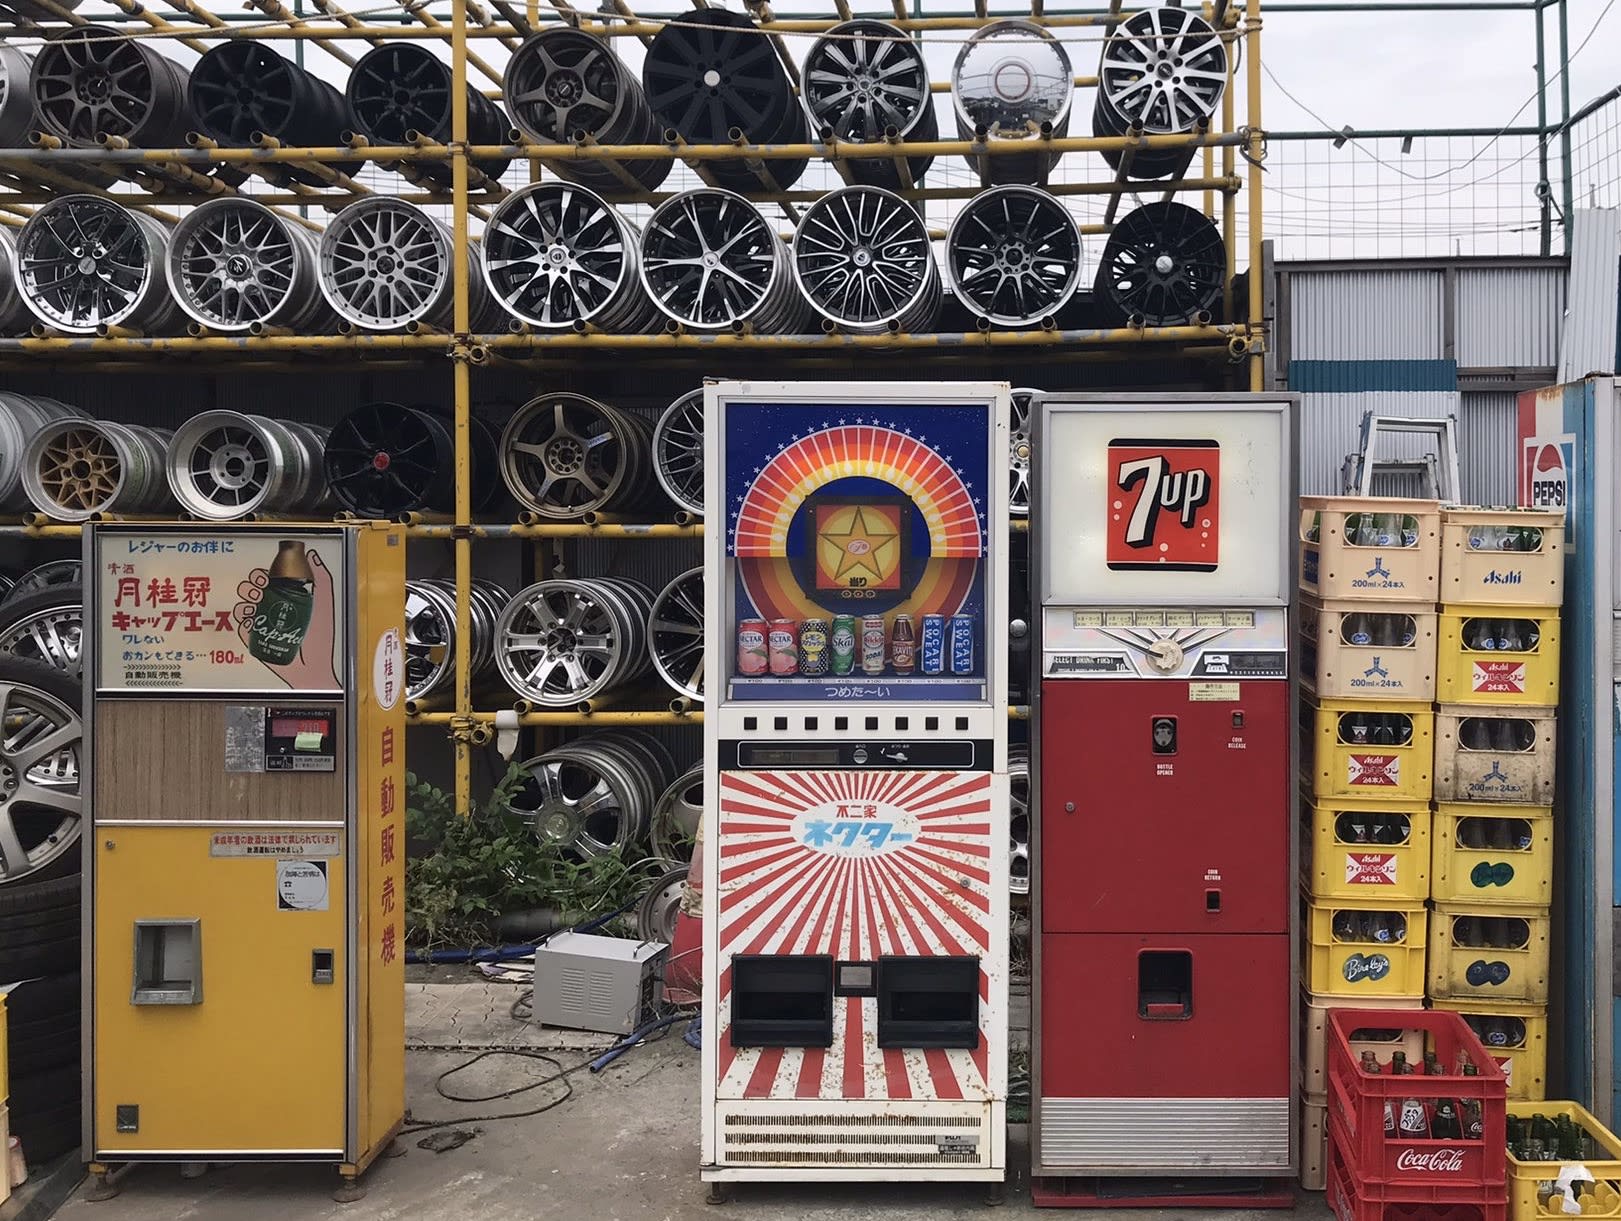 هذه البلدة اليابانية الصغيرة عبارة عن جنة لآلات البيع العتيقة